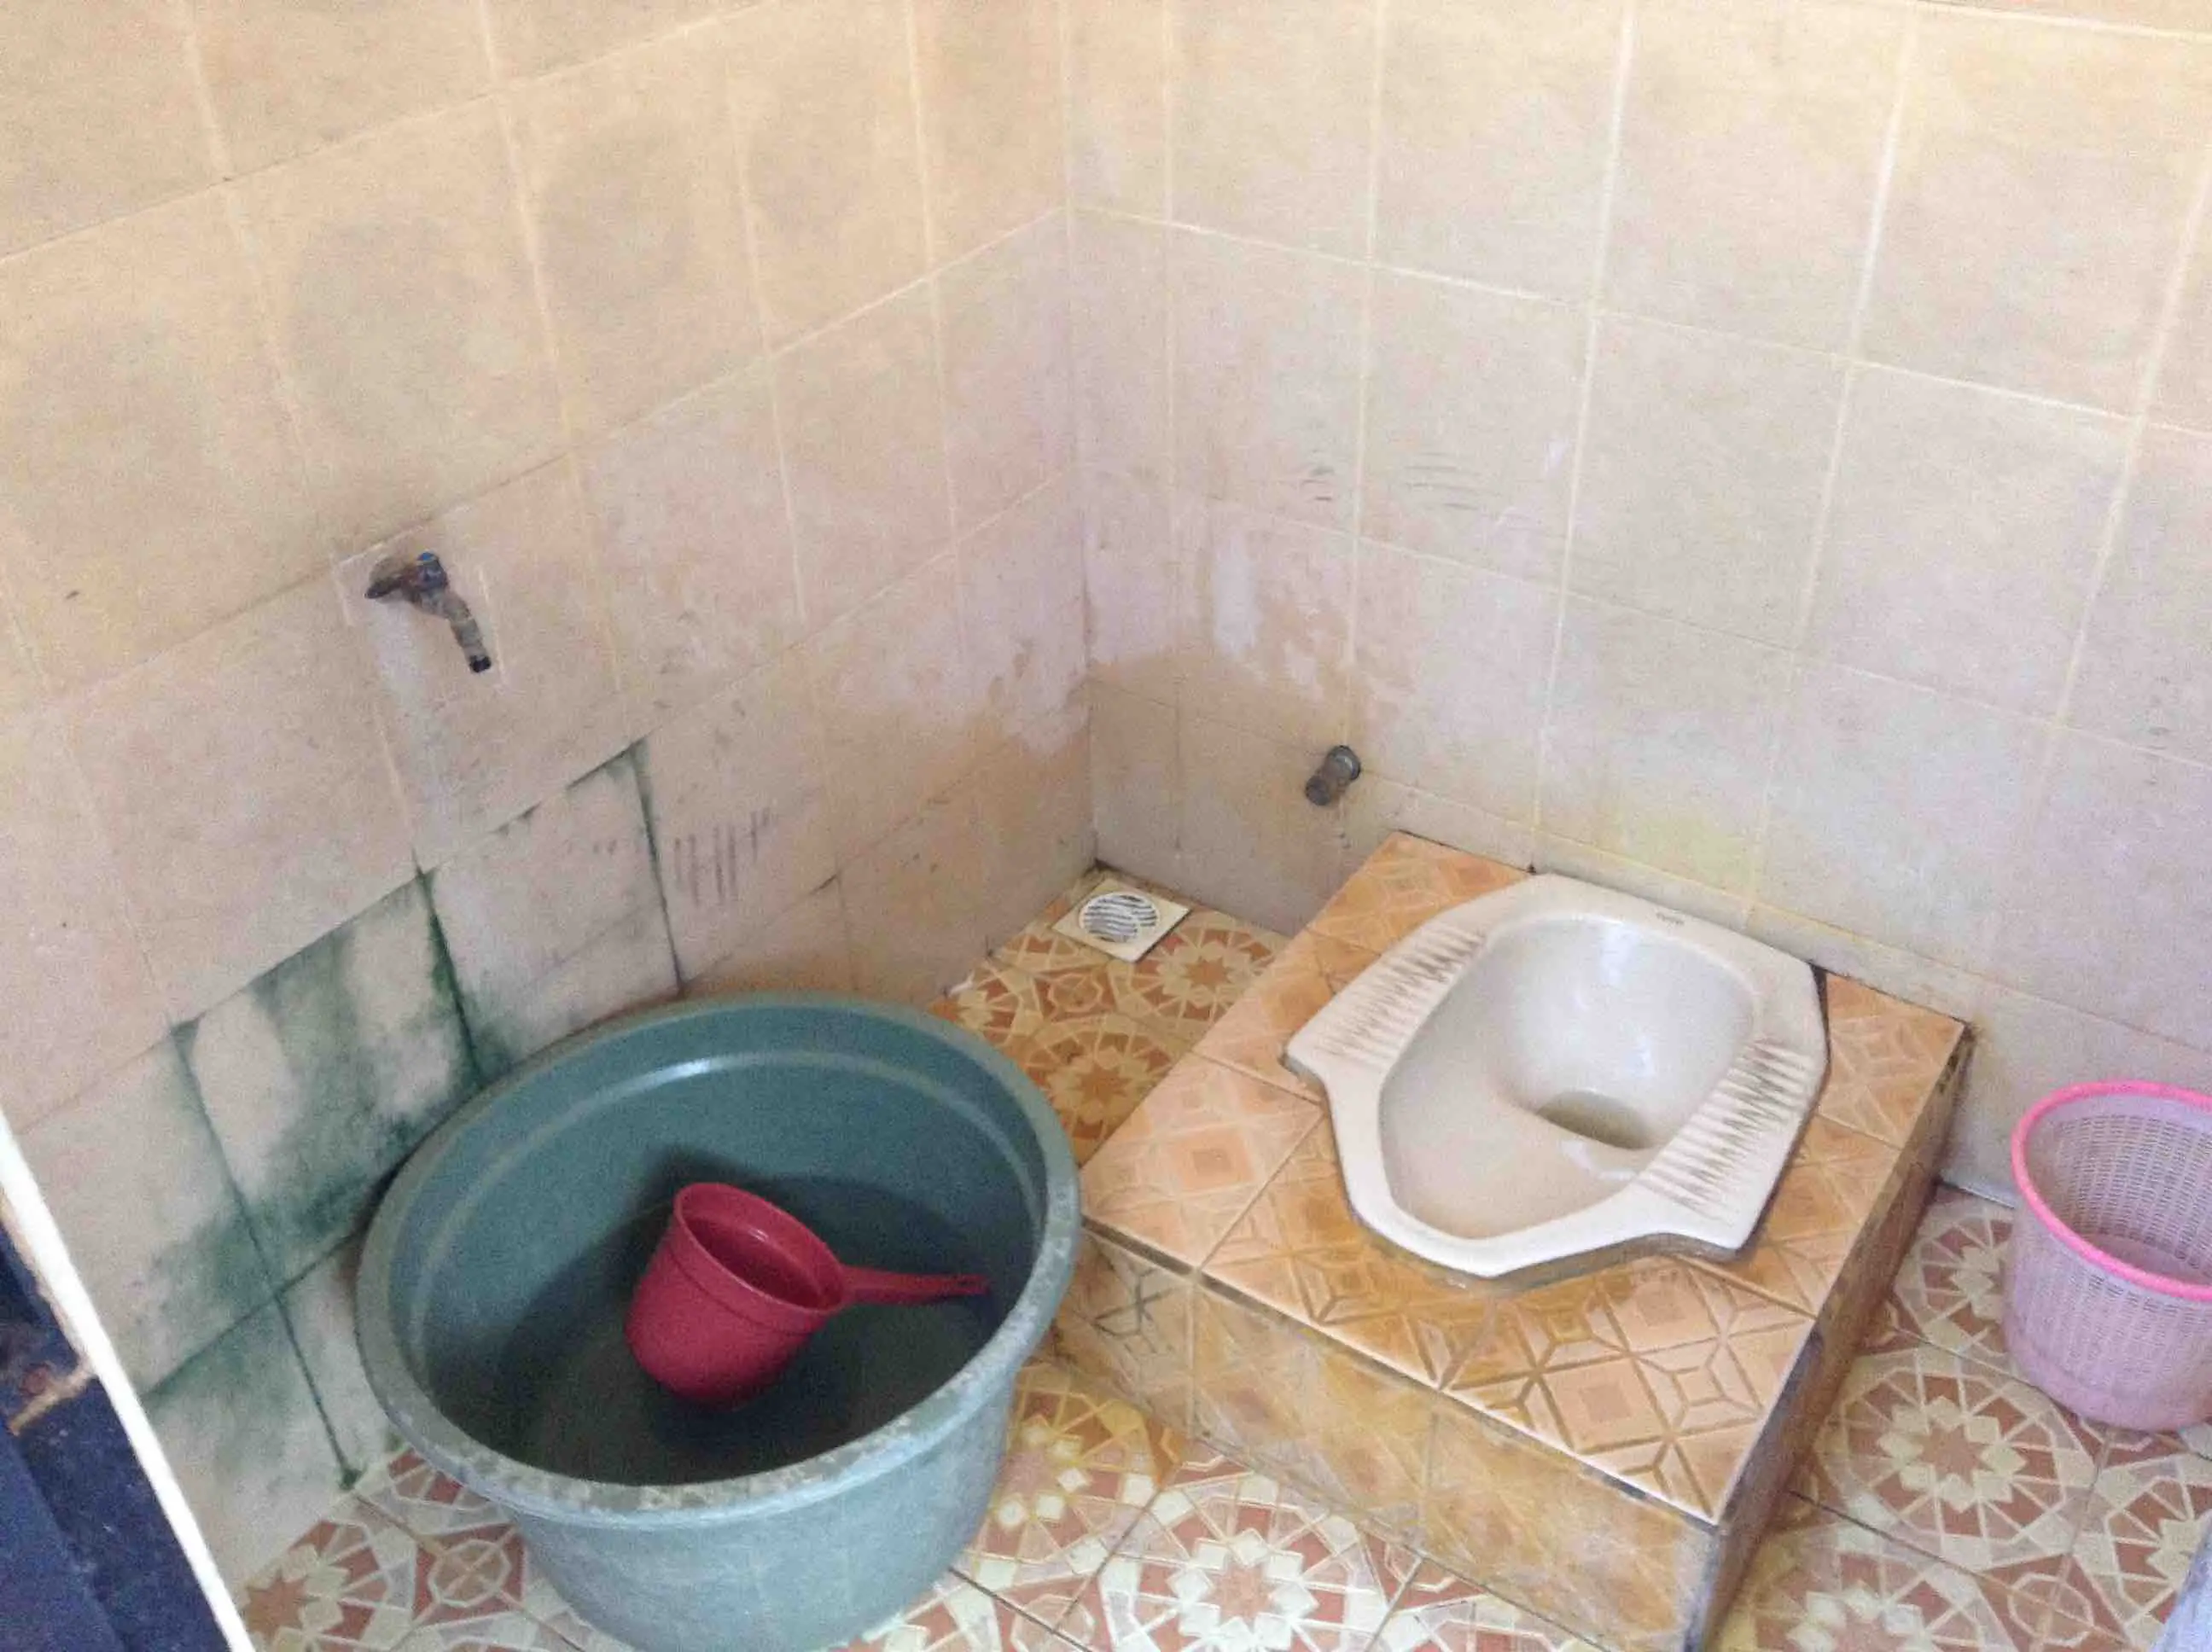 Squat Toilet In Asia